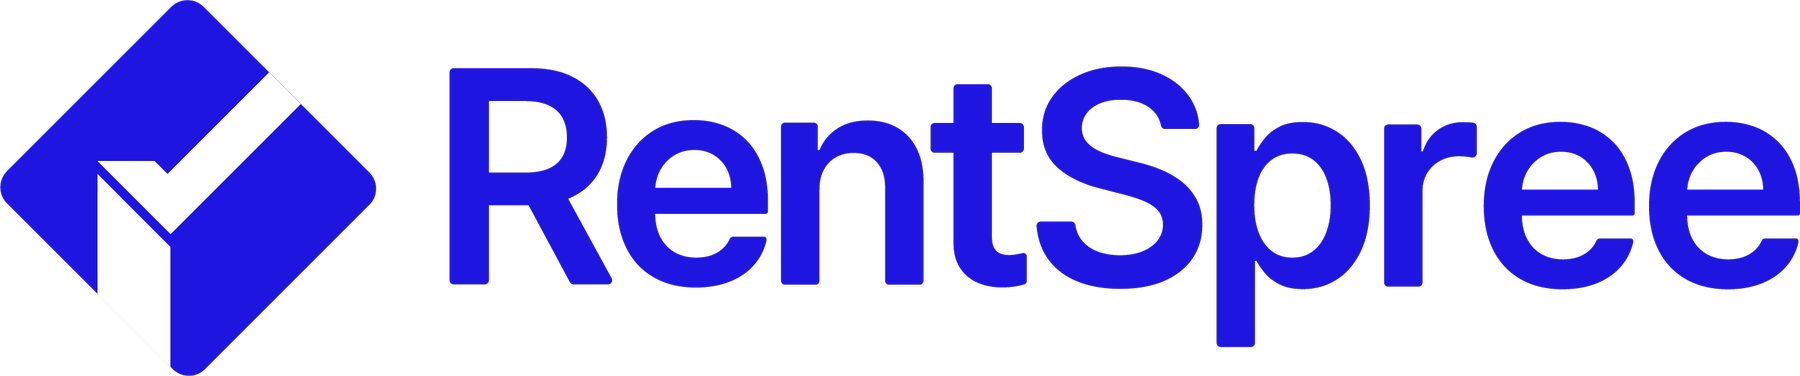 Rentspree Logo Primary